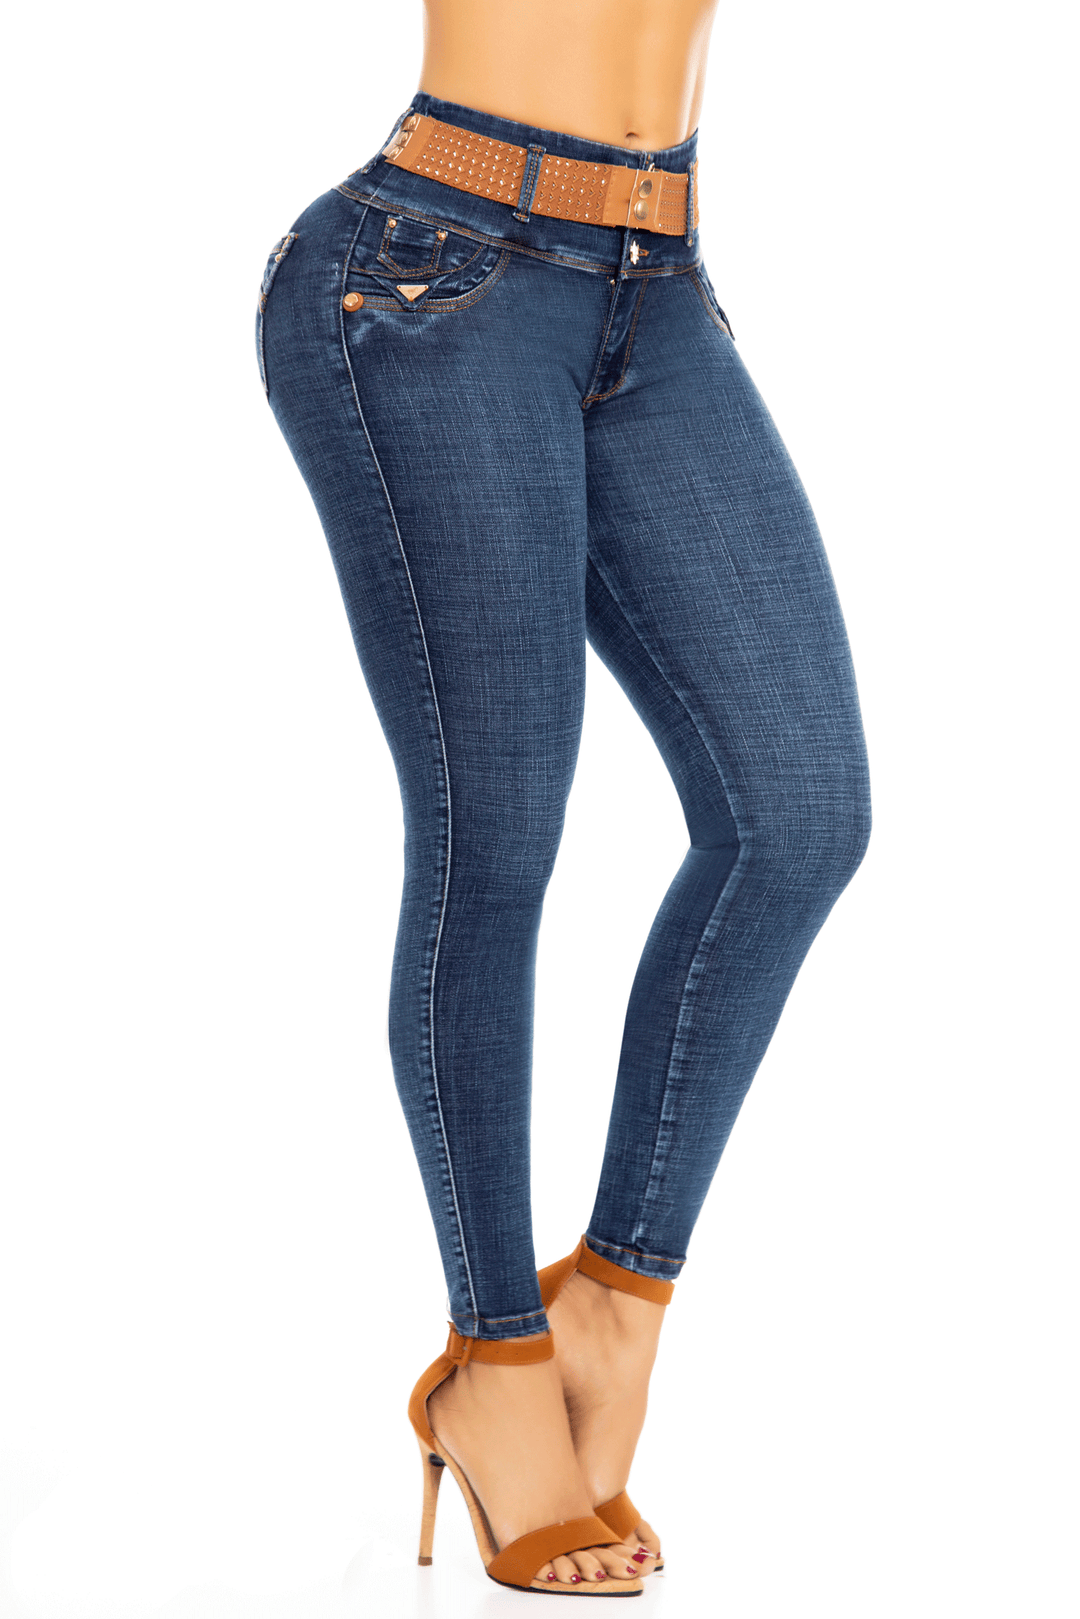 Los Mejores Jeans Colombianos - Encuentra jeans para mujer perfectos para  toda ocasión. Te traemos los recomendados de la semana. Comprar: www. jeanscolombianos.com/revel56357 #jeanscolombianos #jeanslevantacola  #fashion #style #stylish #love #girls